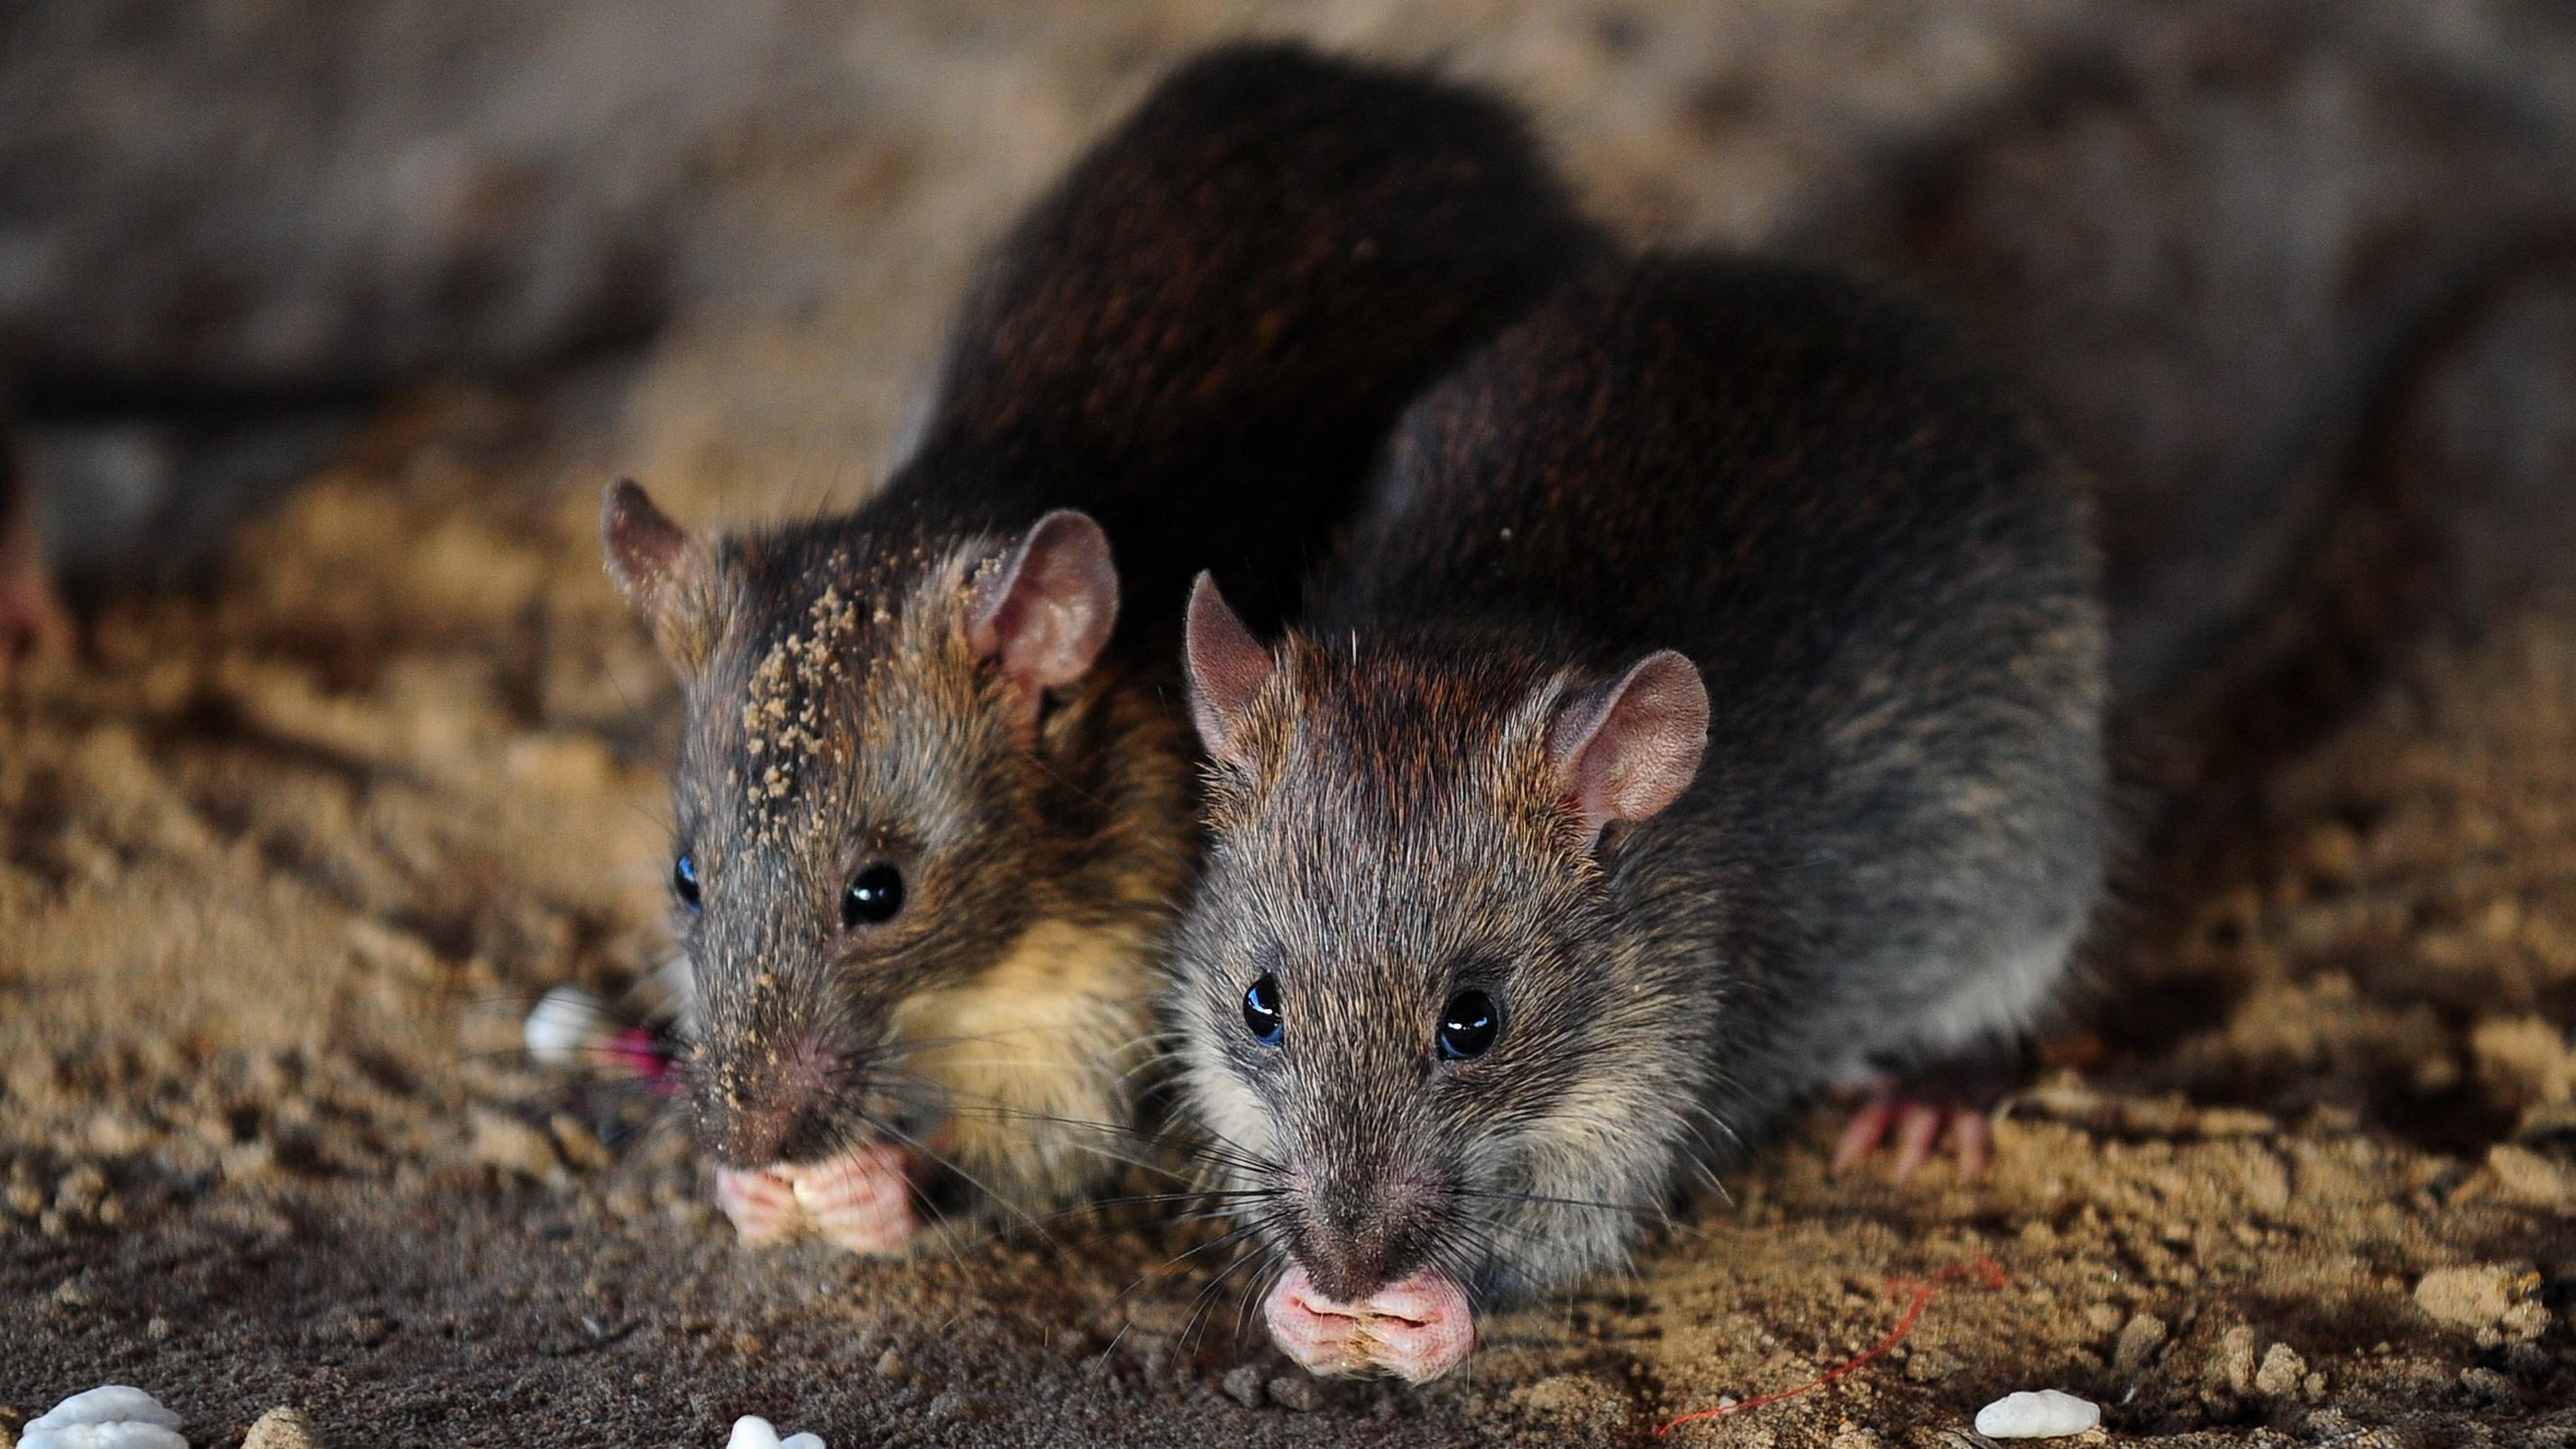 Công ty diệt chuột Cà Mau - Dịch vụ diệt chuột hiệu quả, chuyên nghiệp